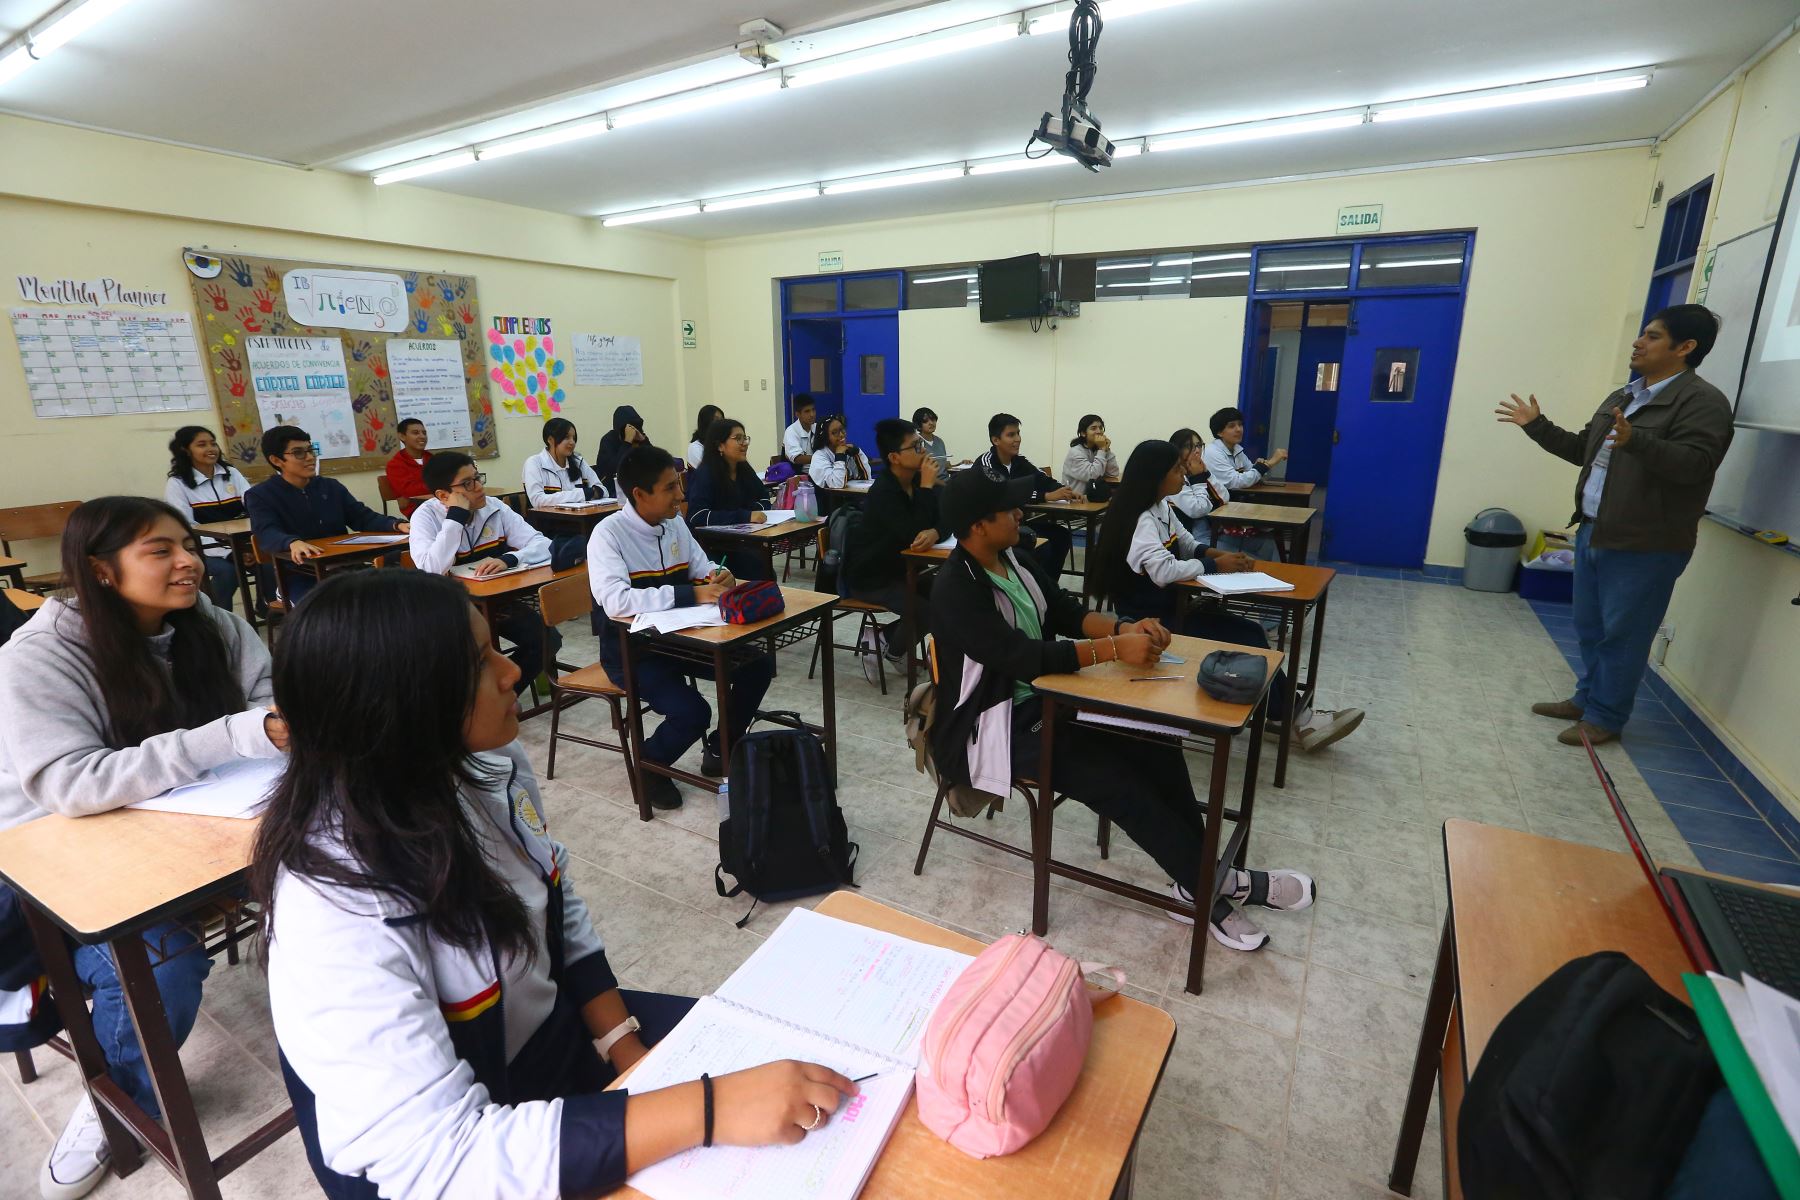 De acuerdo con un proyecto legislativo, los docentes contratados serían nombrados automáticamente sin concurso público. Foto: ANDINA/Eddy Ramos.